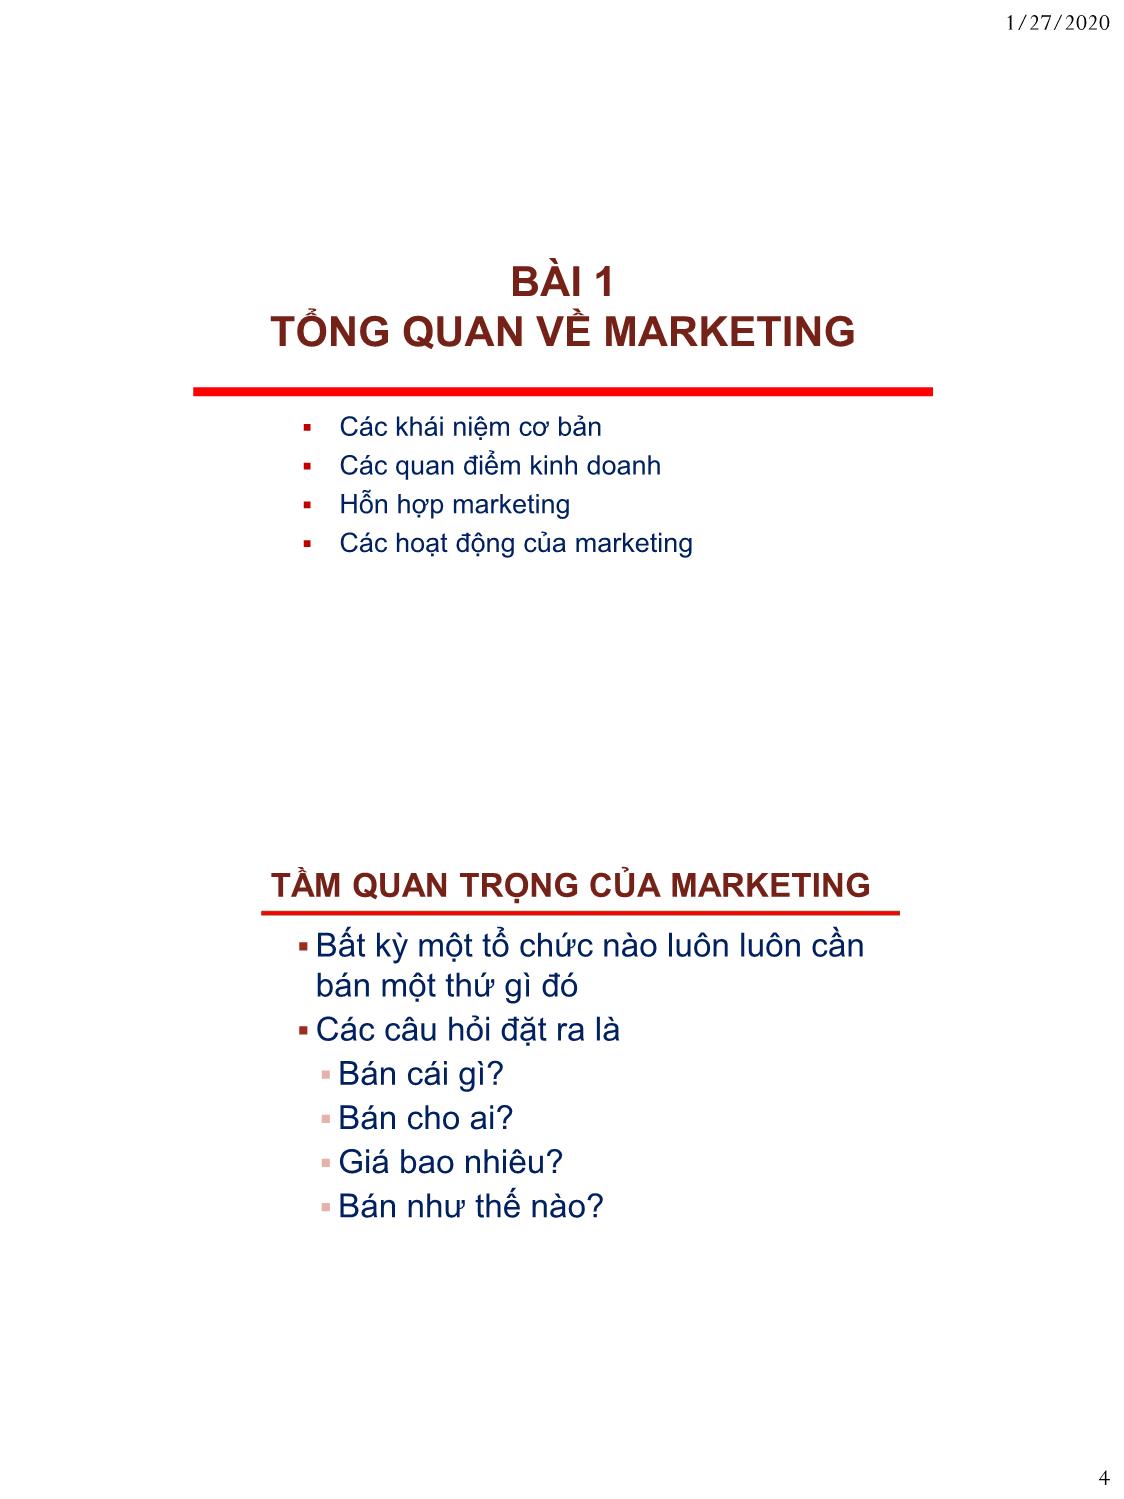 Bài giảng Nguyên lý marketing - Bài 1: Tổng quan về marketing - Nguyễn Thị Mai An trang 4